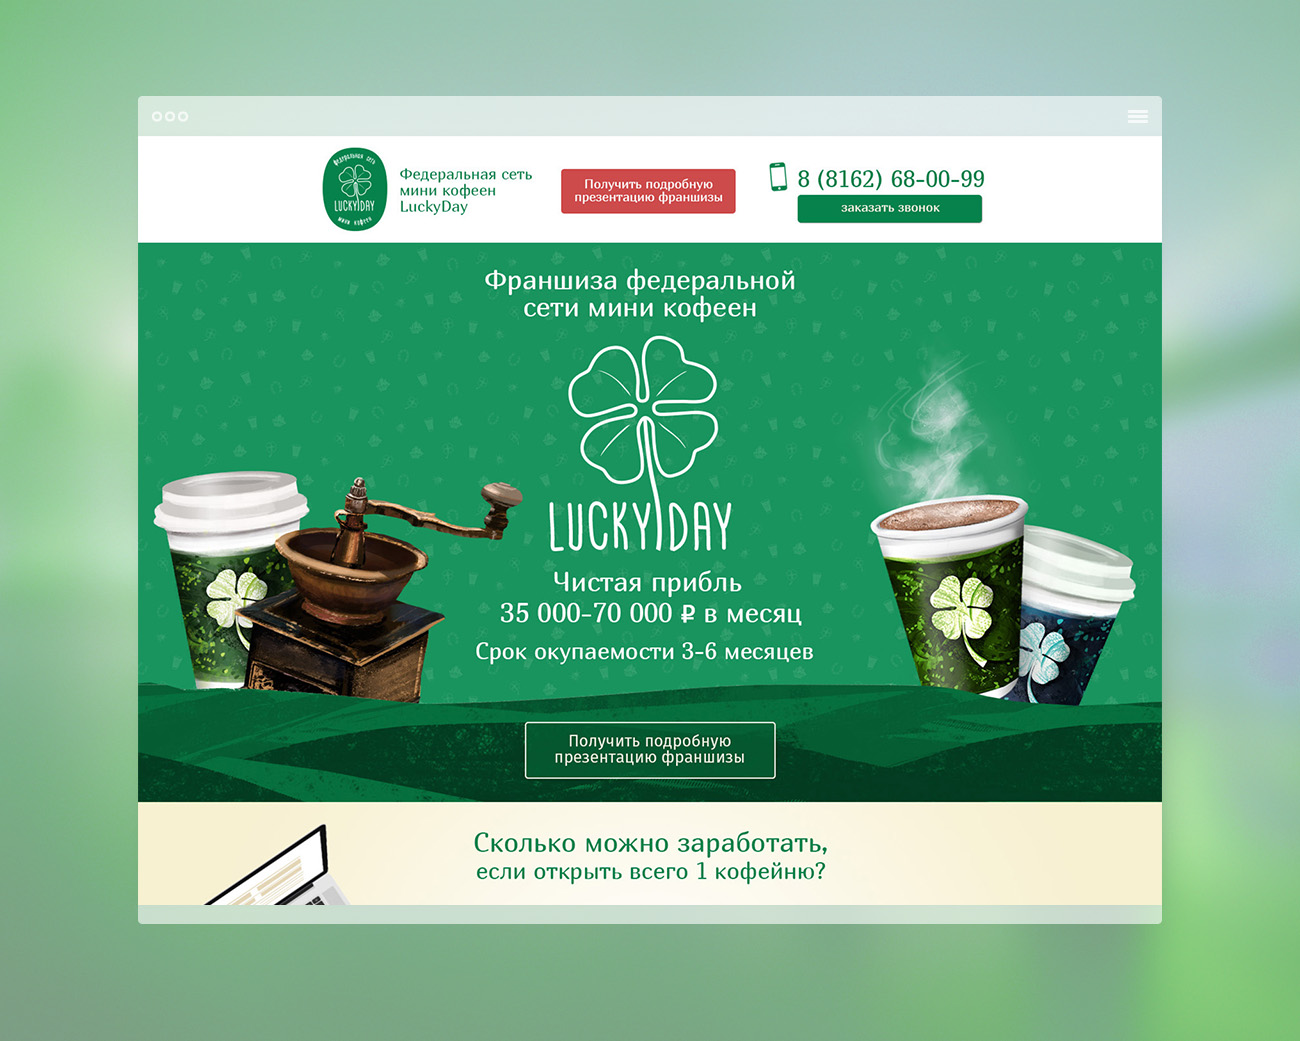 Разработали сайт франчайзинга федеральной сети мини кофеен Lucky Day